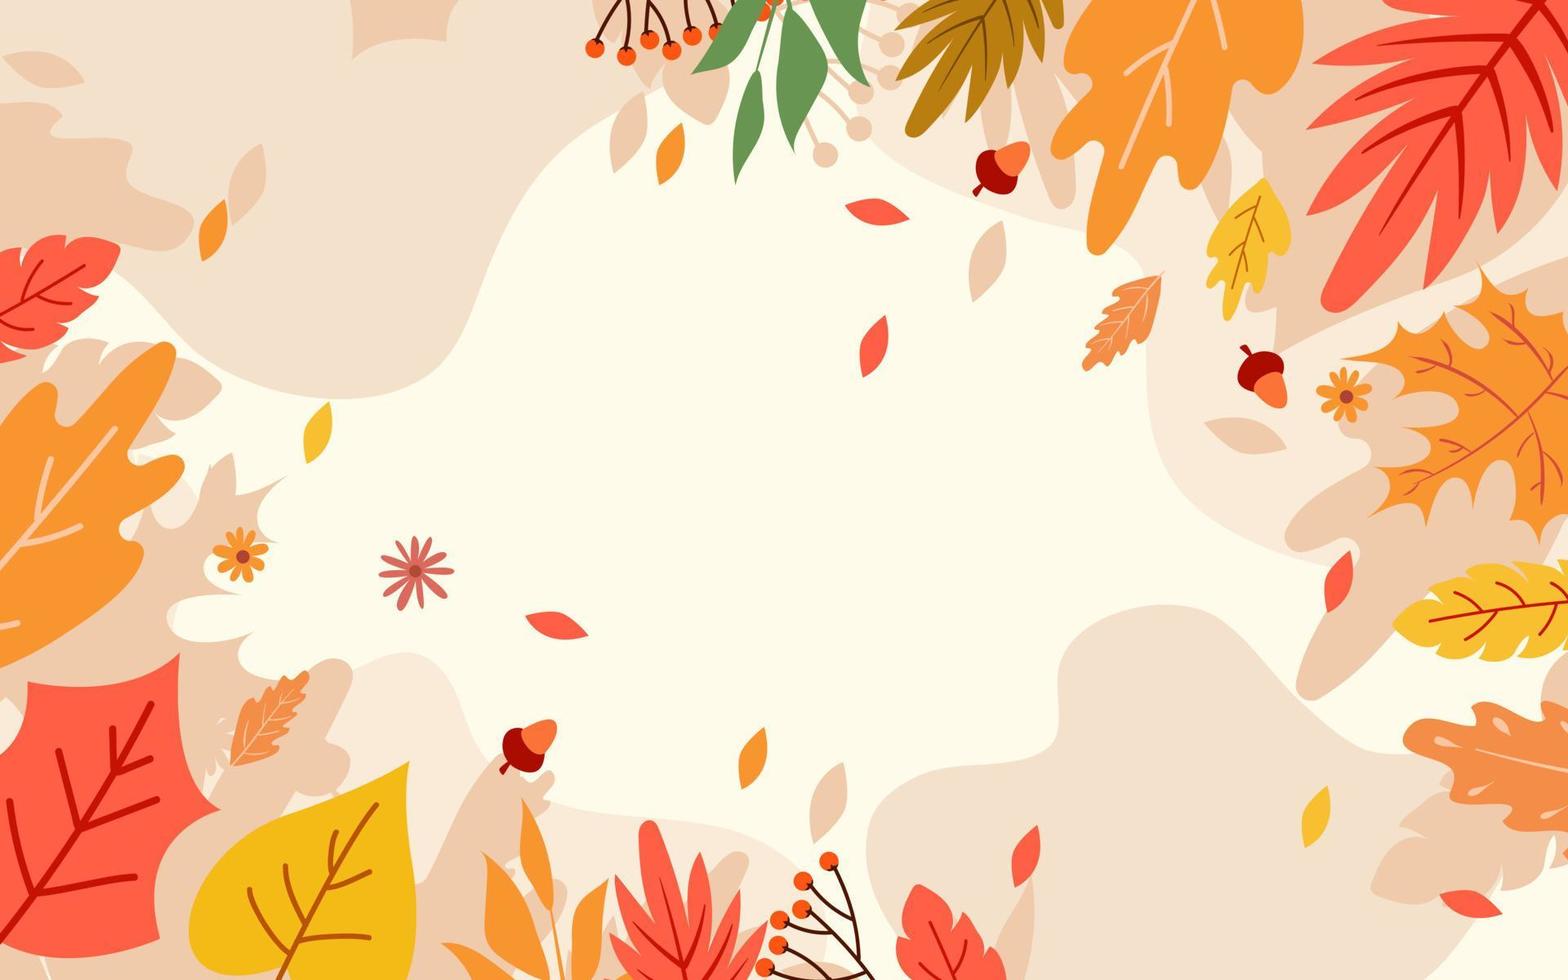 desenhado outono fundo com outono folhas vetor